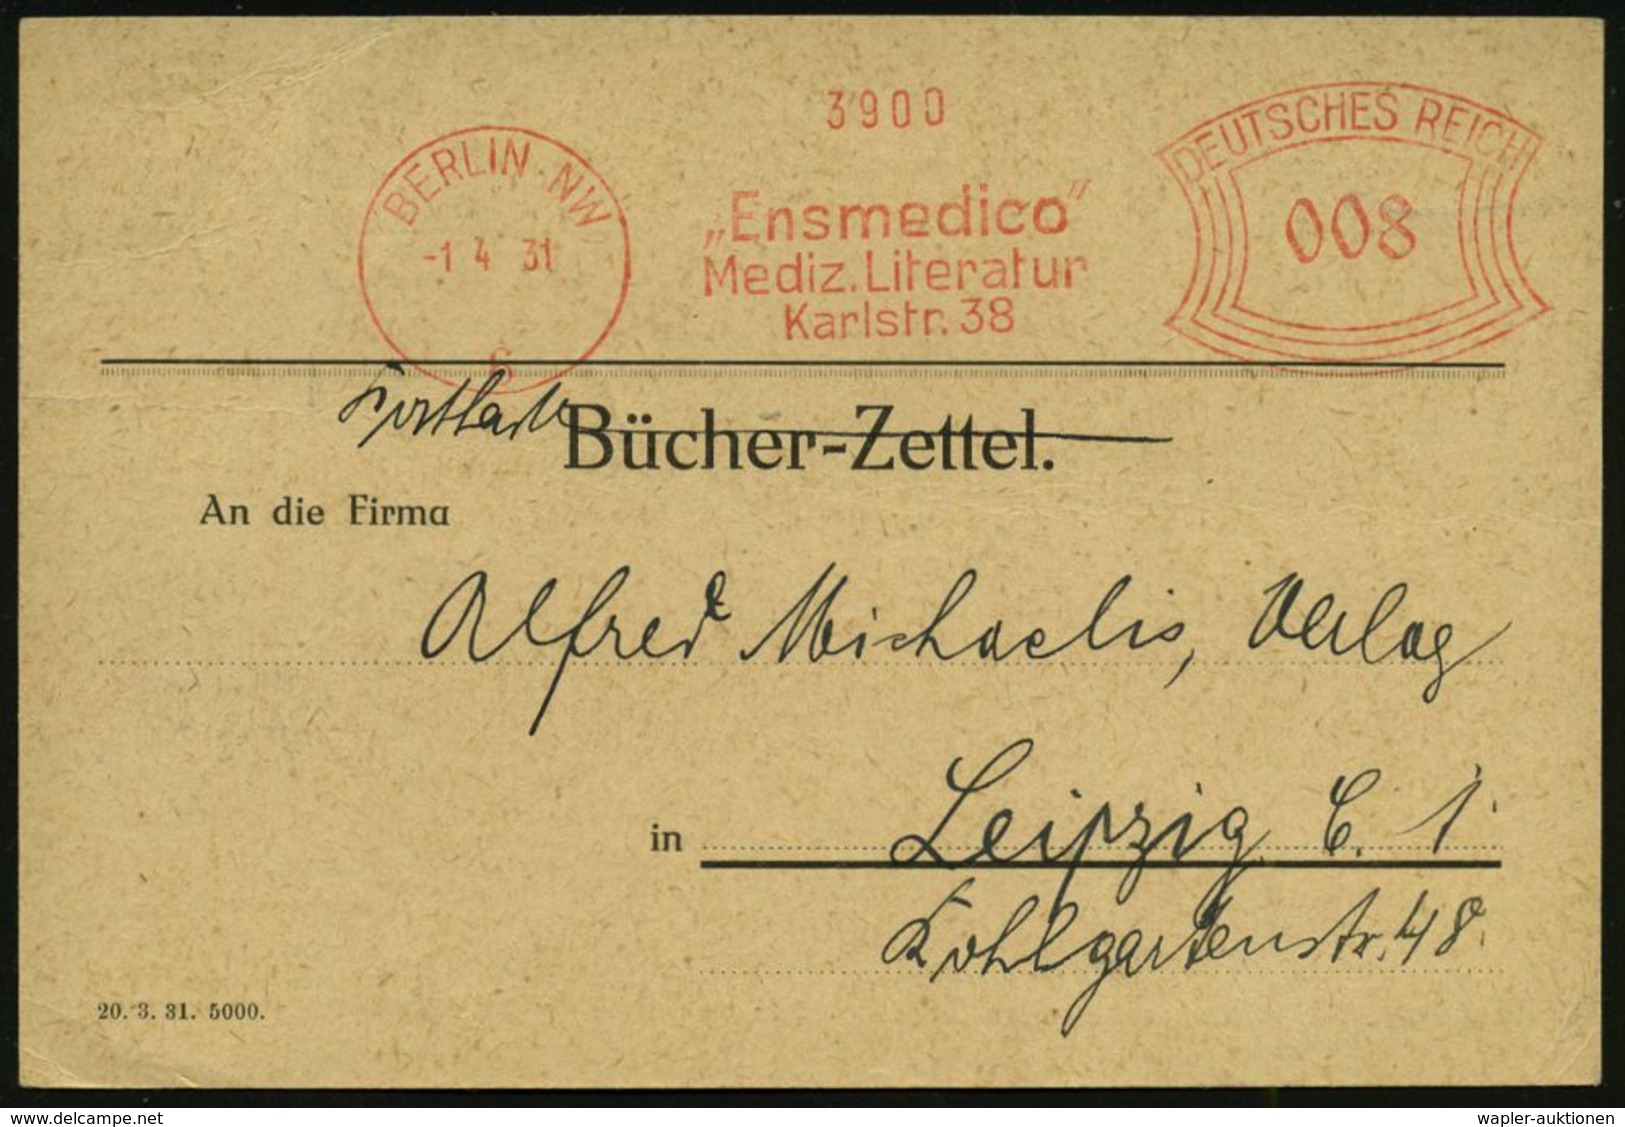 MEDIZIN / GESUNDHEITSWESEN : BERLIN NW/ 6/ "Ensmedico"/ Medizin.Literatur.. 1931 (1.4.) AFS 008 Pf. "Bücherzettel" Als P - Medicine